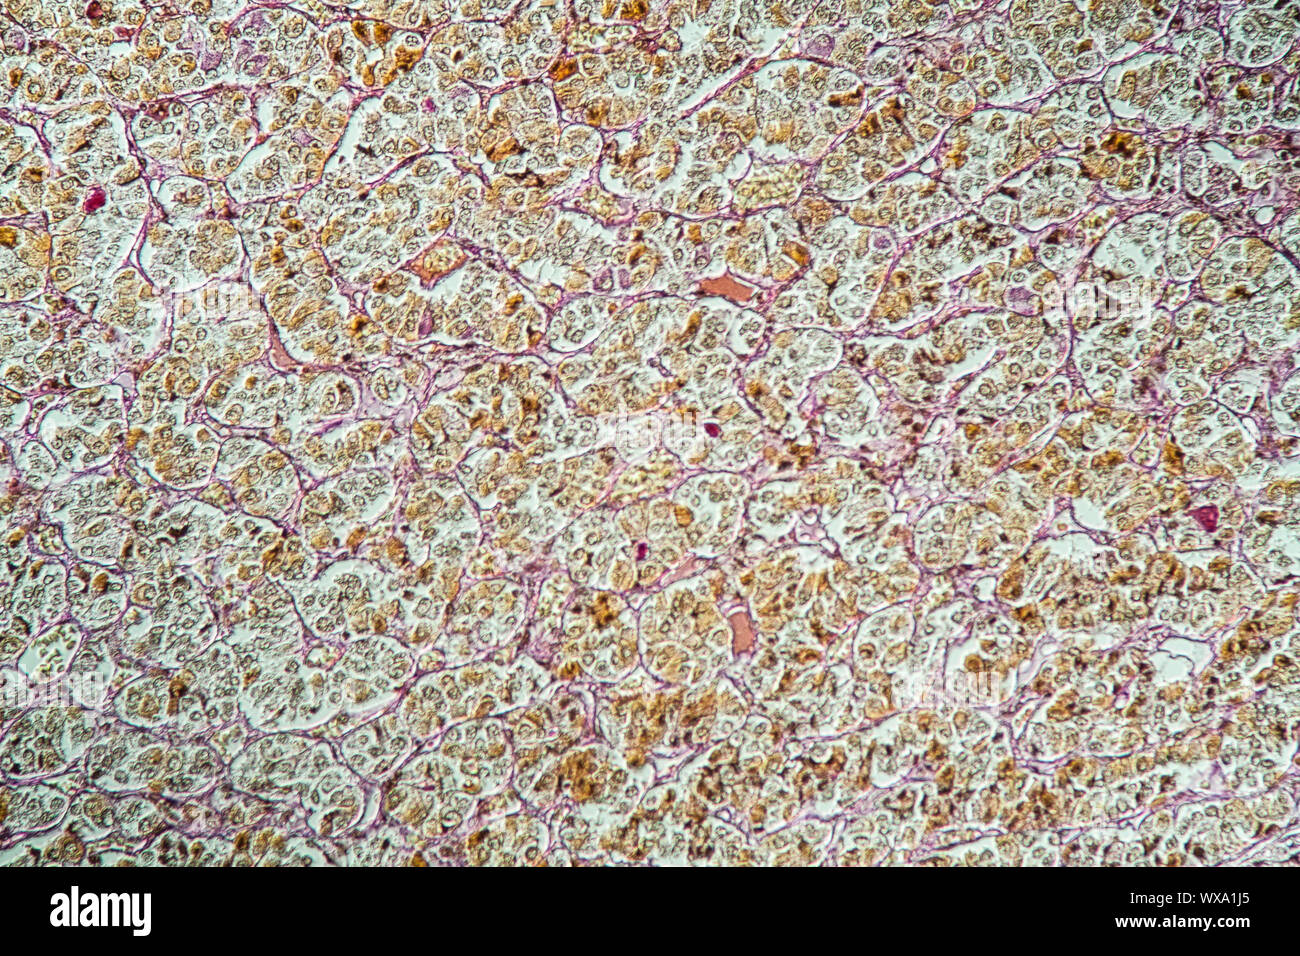 La ghiandola pituitaria ghiandola pituitaria sotto il microscopio 200x Foto Stock